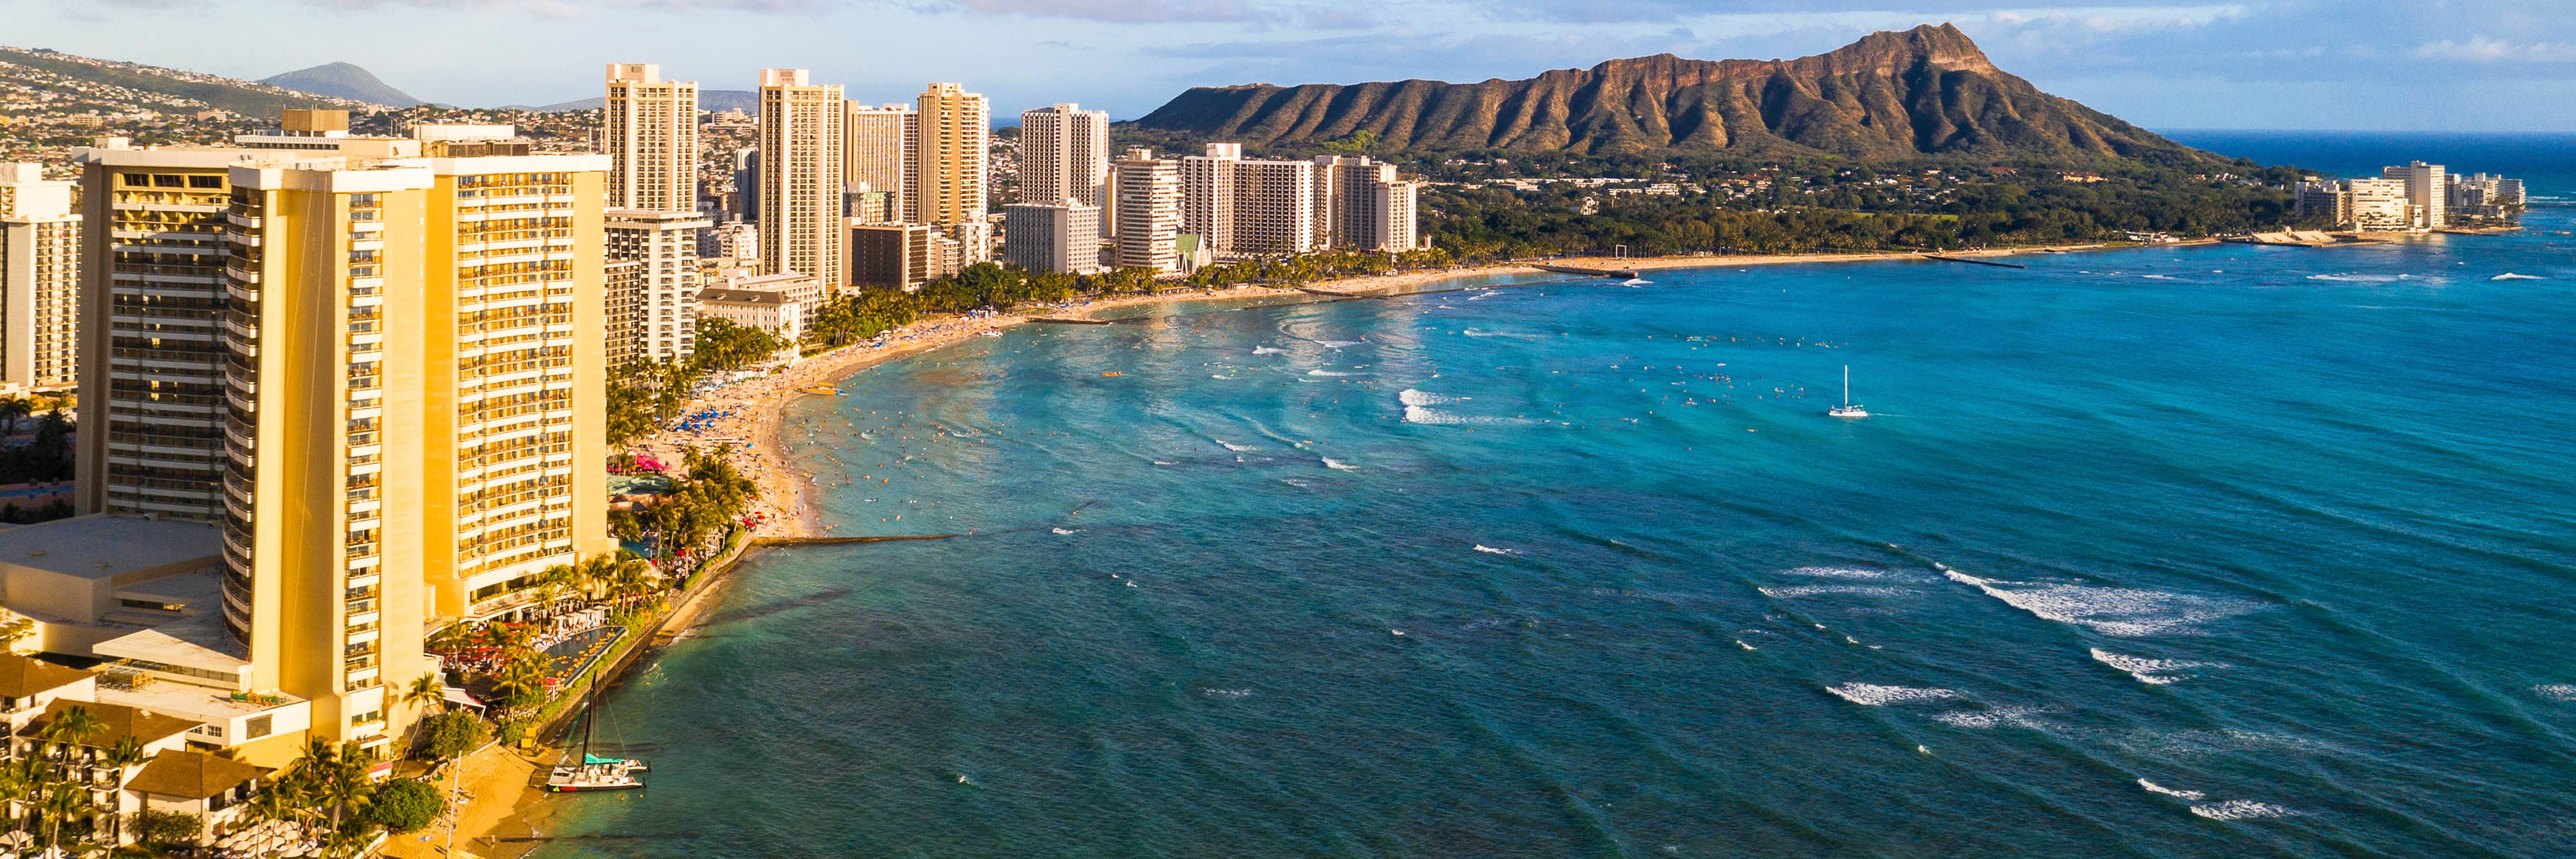 Hawaii Destination- Oahu